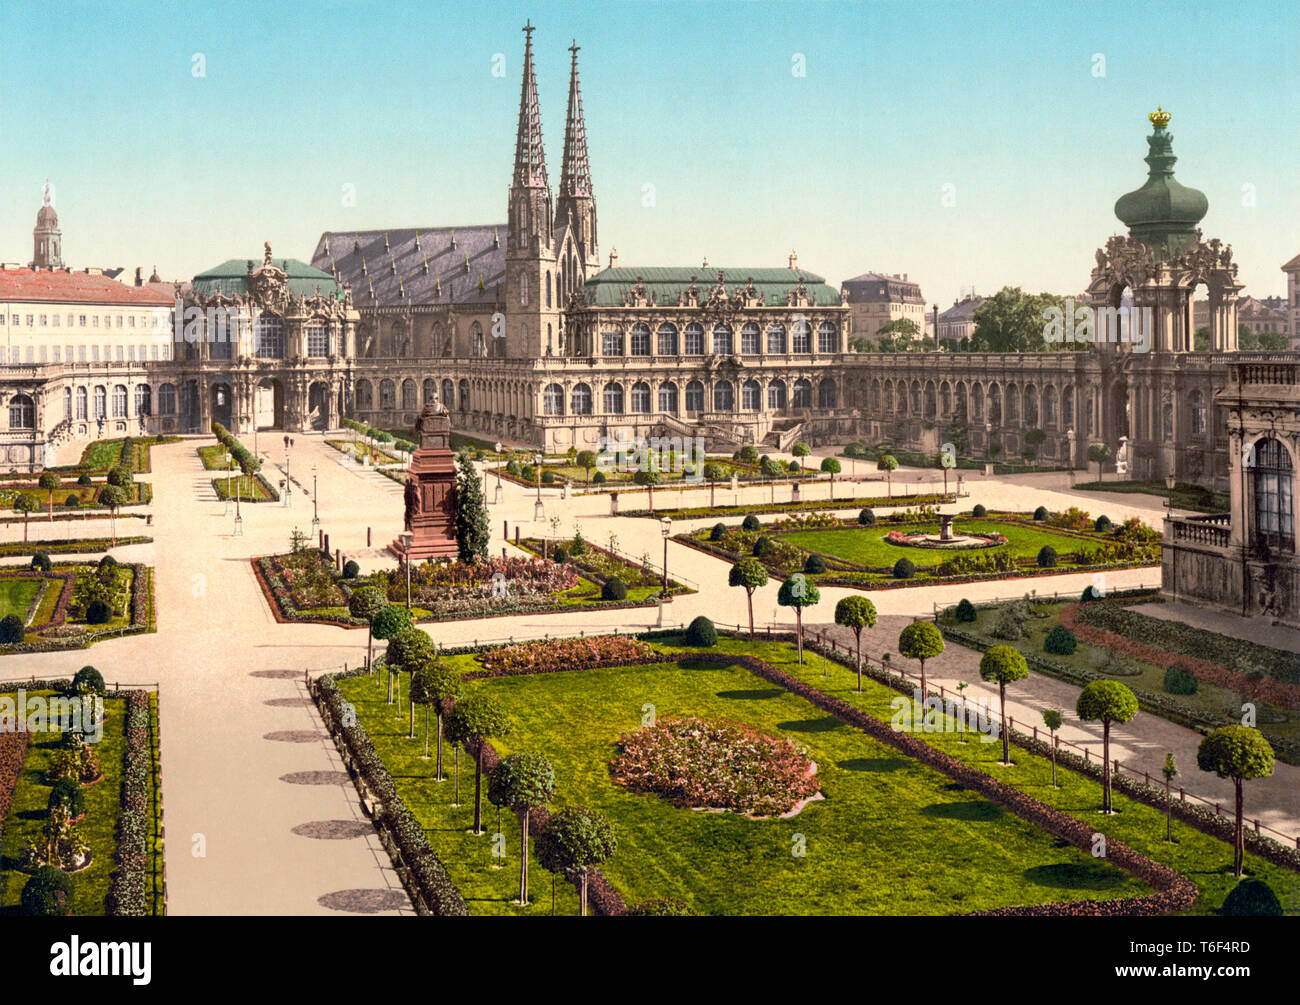 Il Royal carcere e la Santa Chiesa di Sophie, Altstadt, Dresda, Sassonia, Germania, visto in un c. 1895 photochrom. La città fu pesantemente bombardata nella Seconda guerra mondiale. Circa 1900 Foto Stock